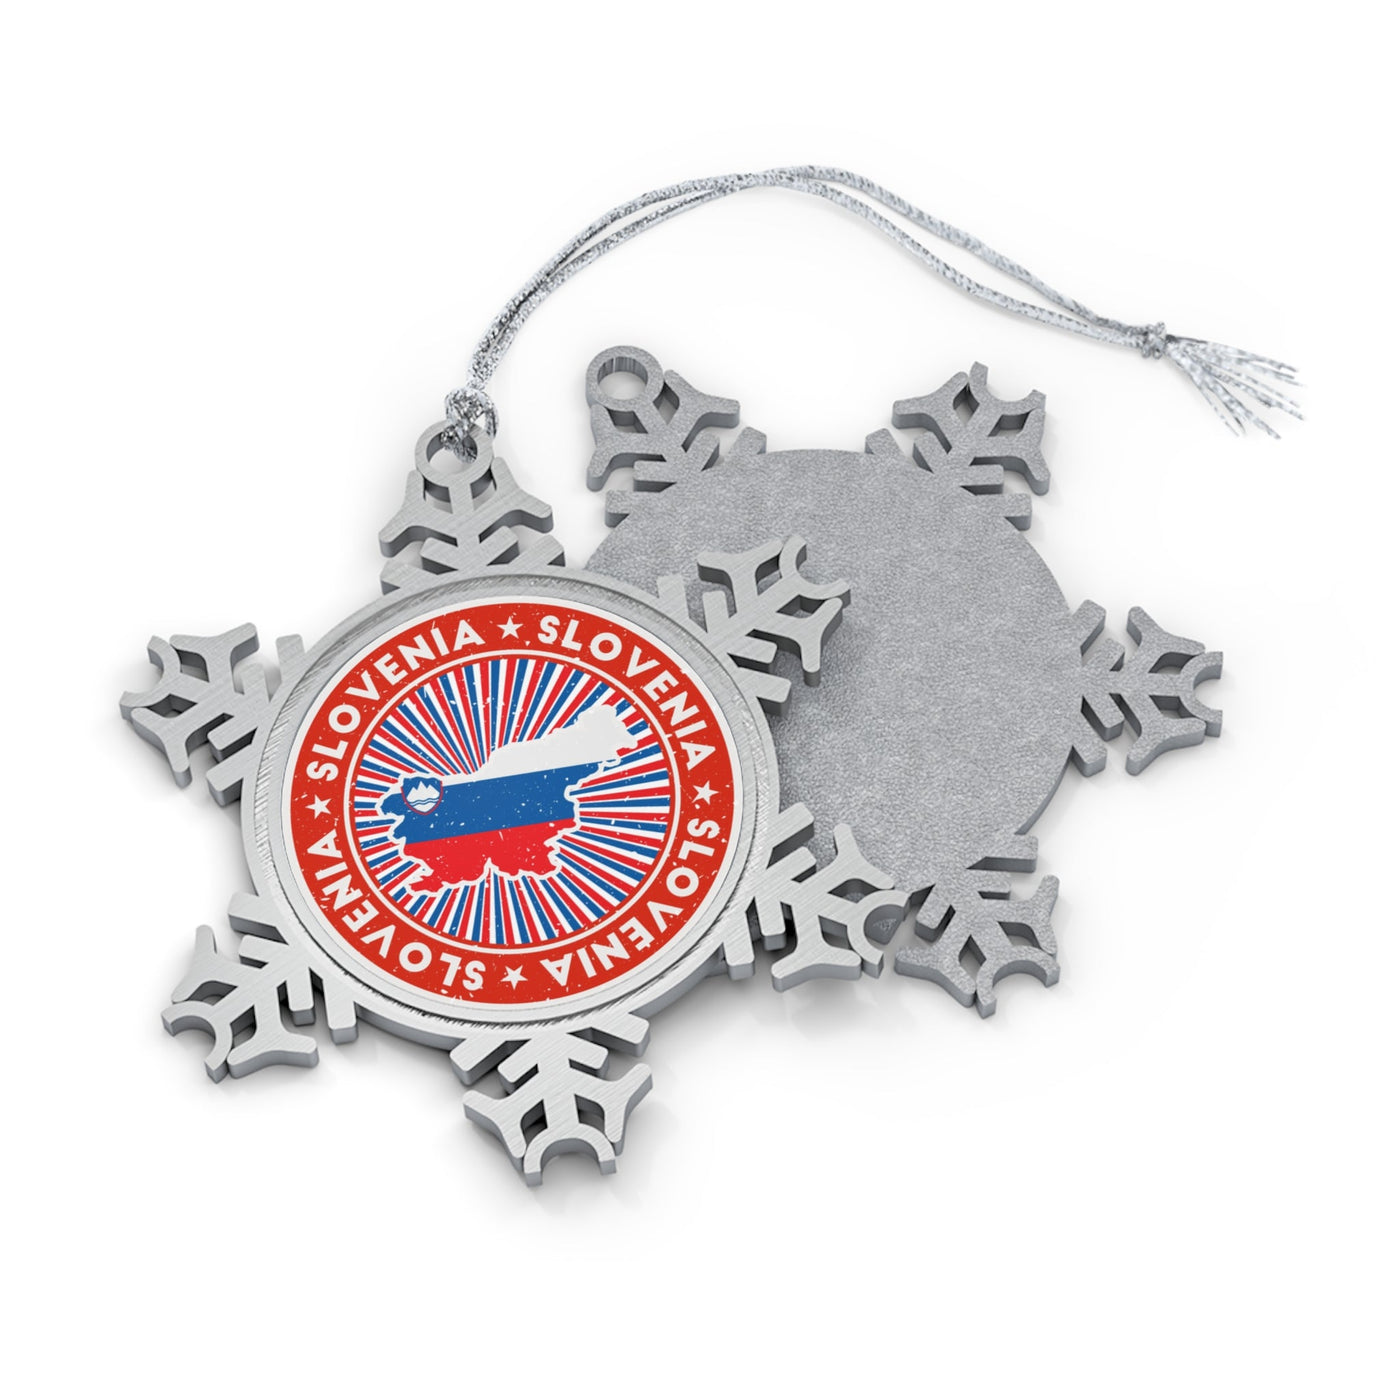 Slovenia Snowflake Ornament - Ezra's Clothing